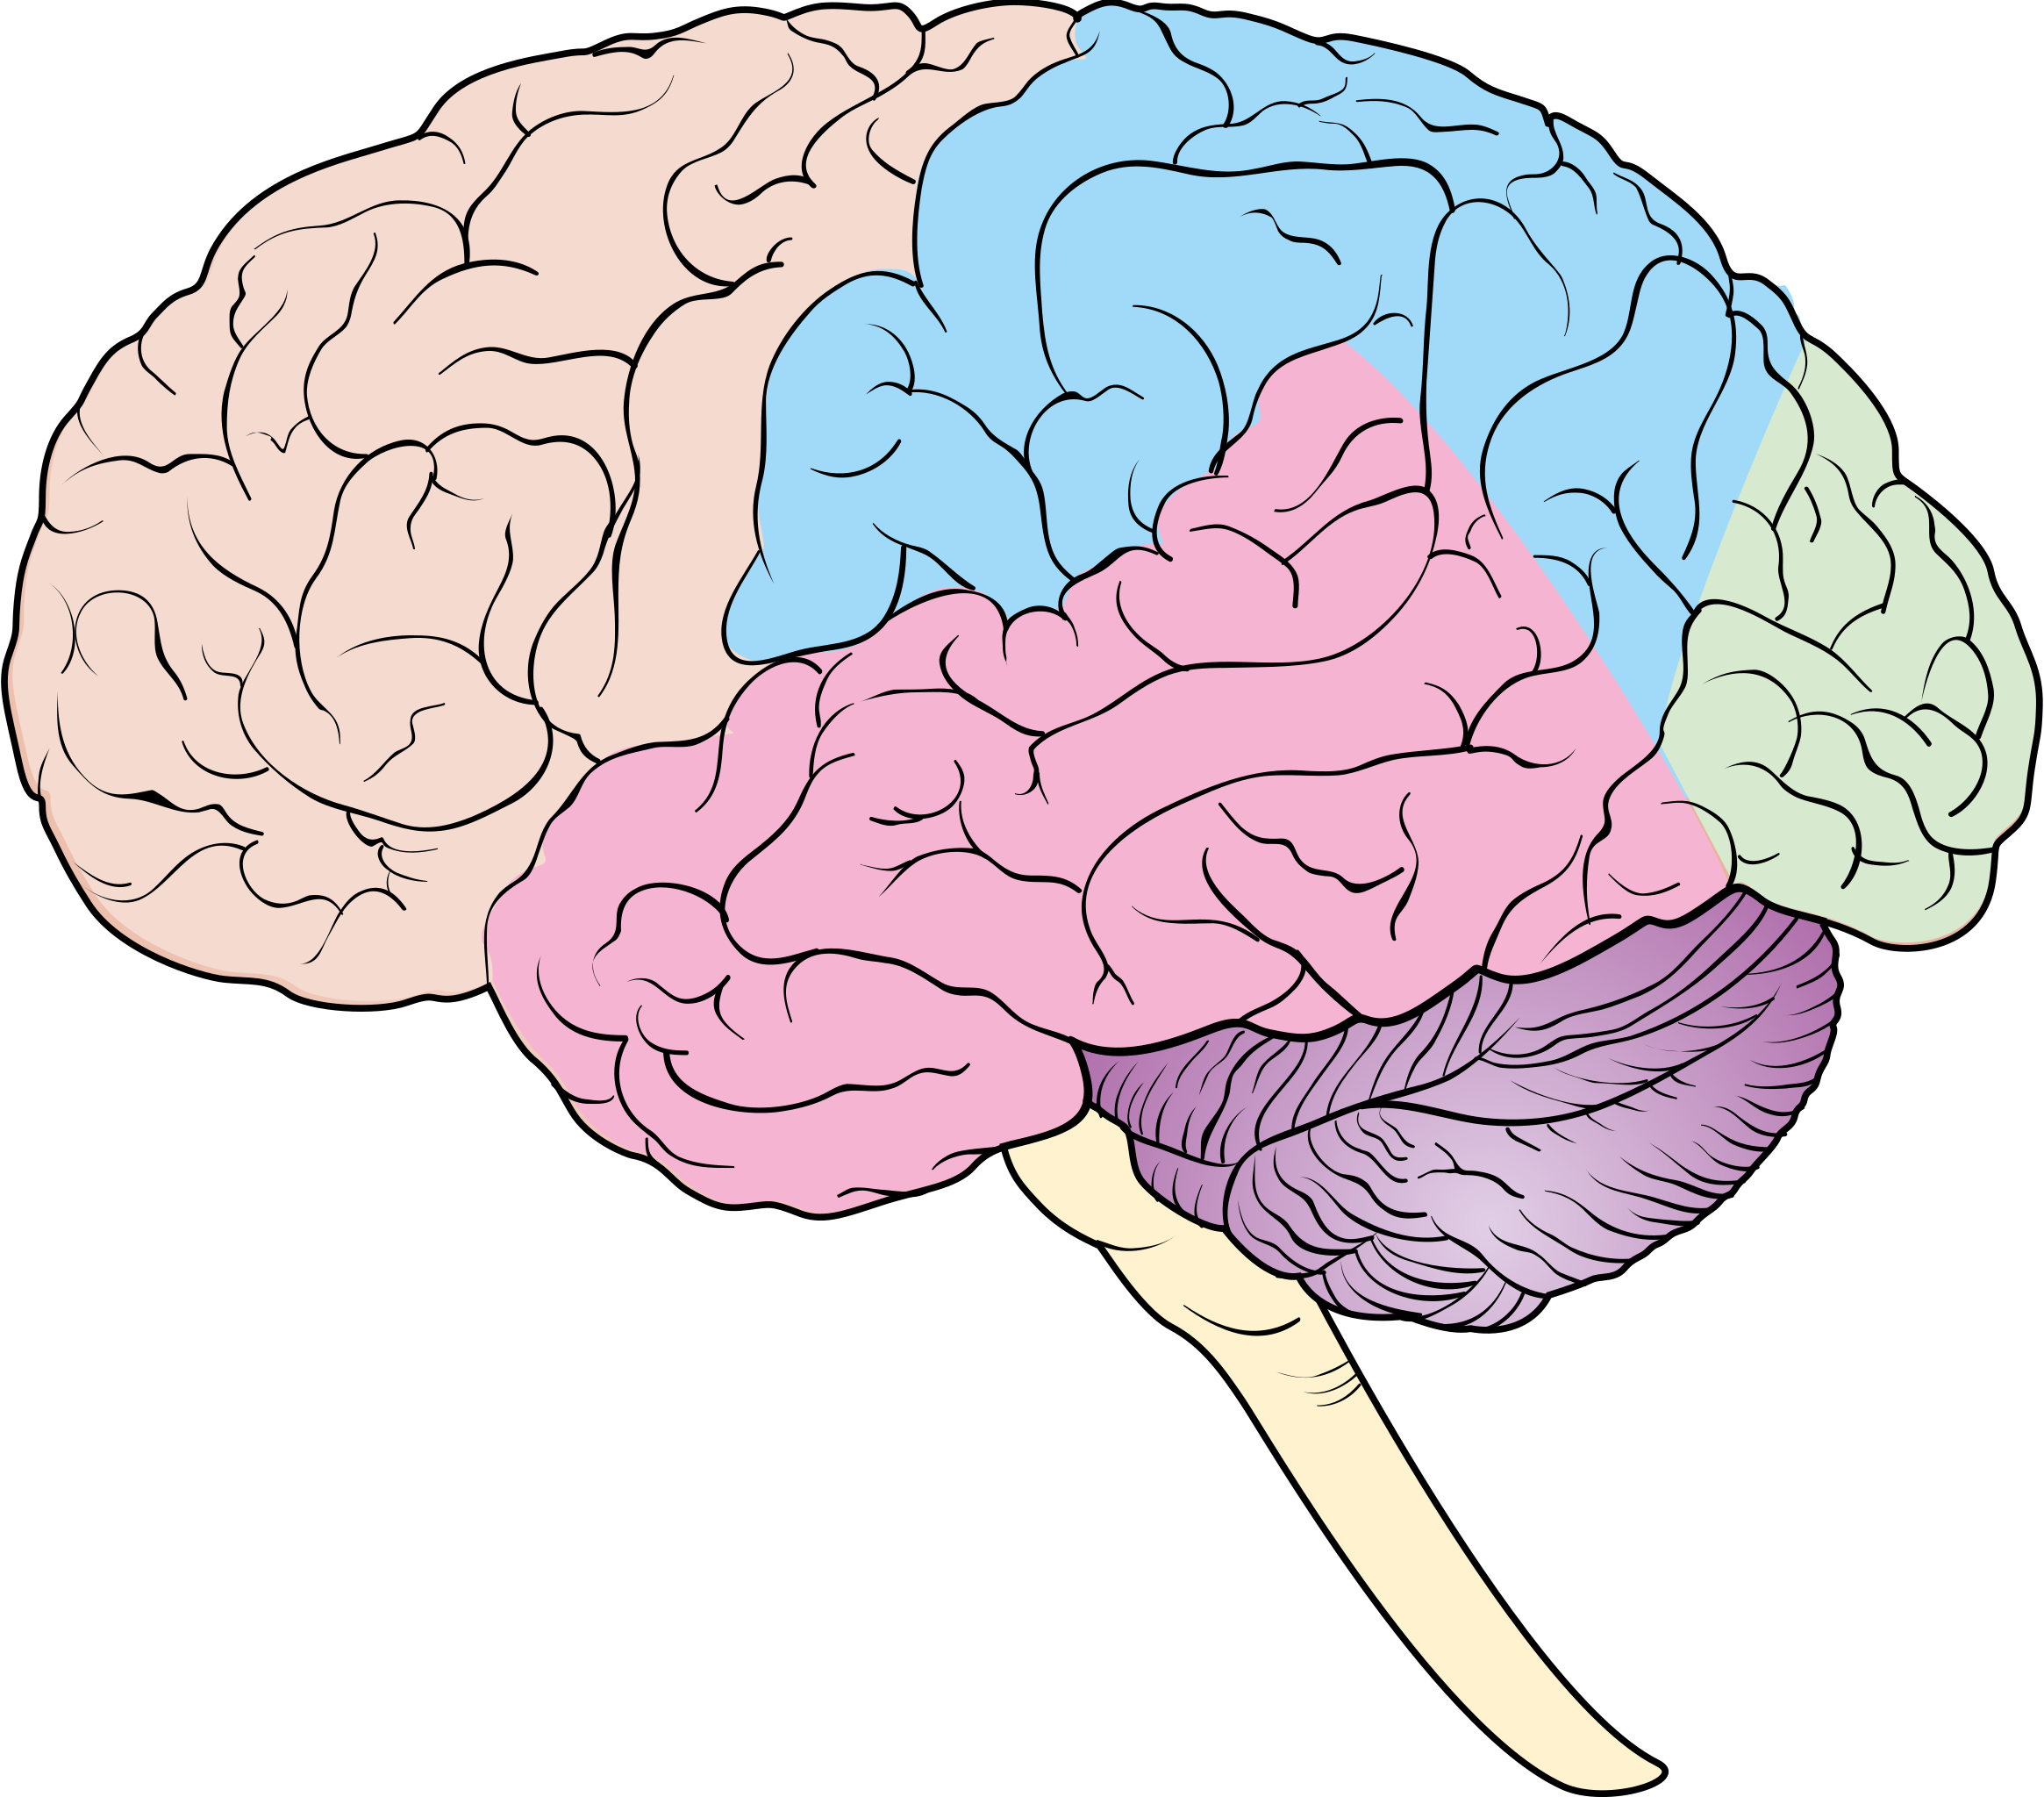 Brain pdf. Головной мозг. Мозг рисунок. Изображение головного мозга. Головной мозг человека рисунок.